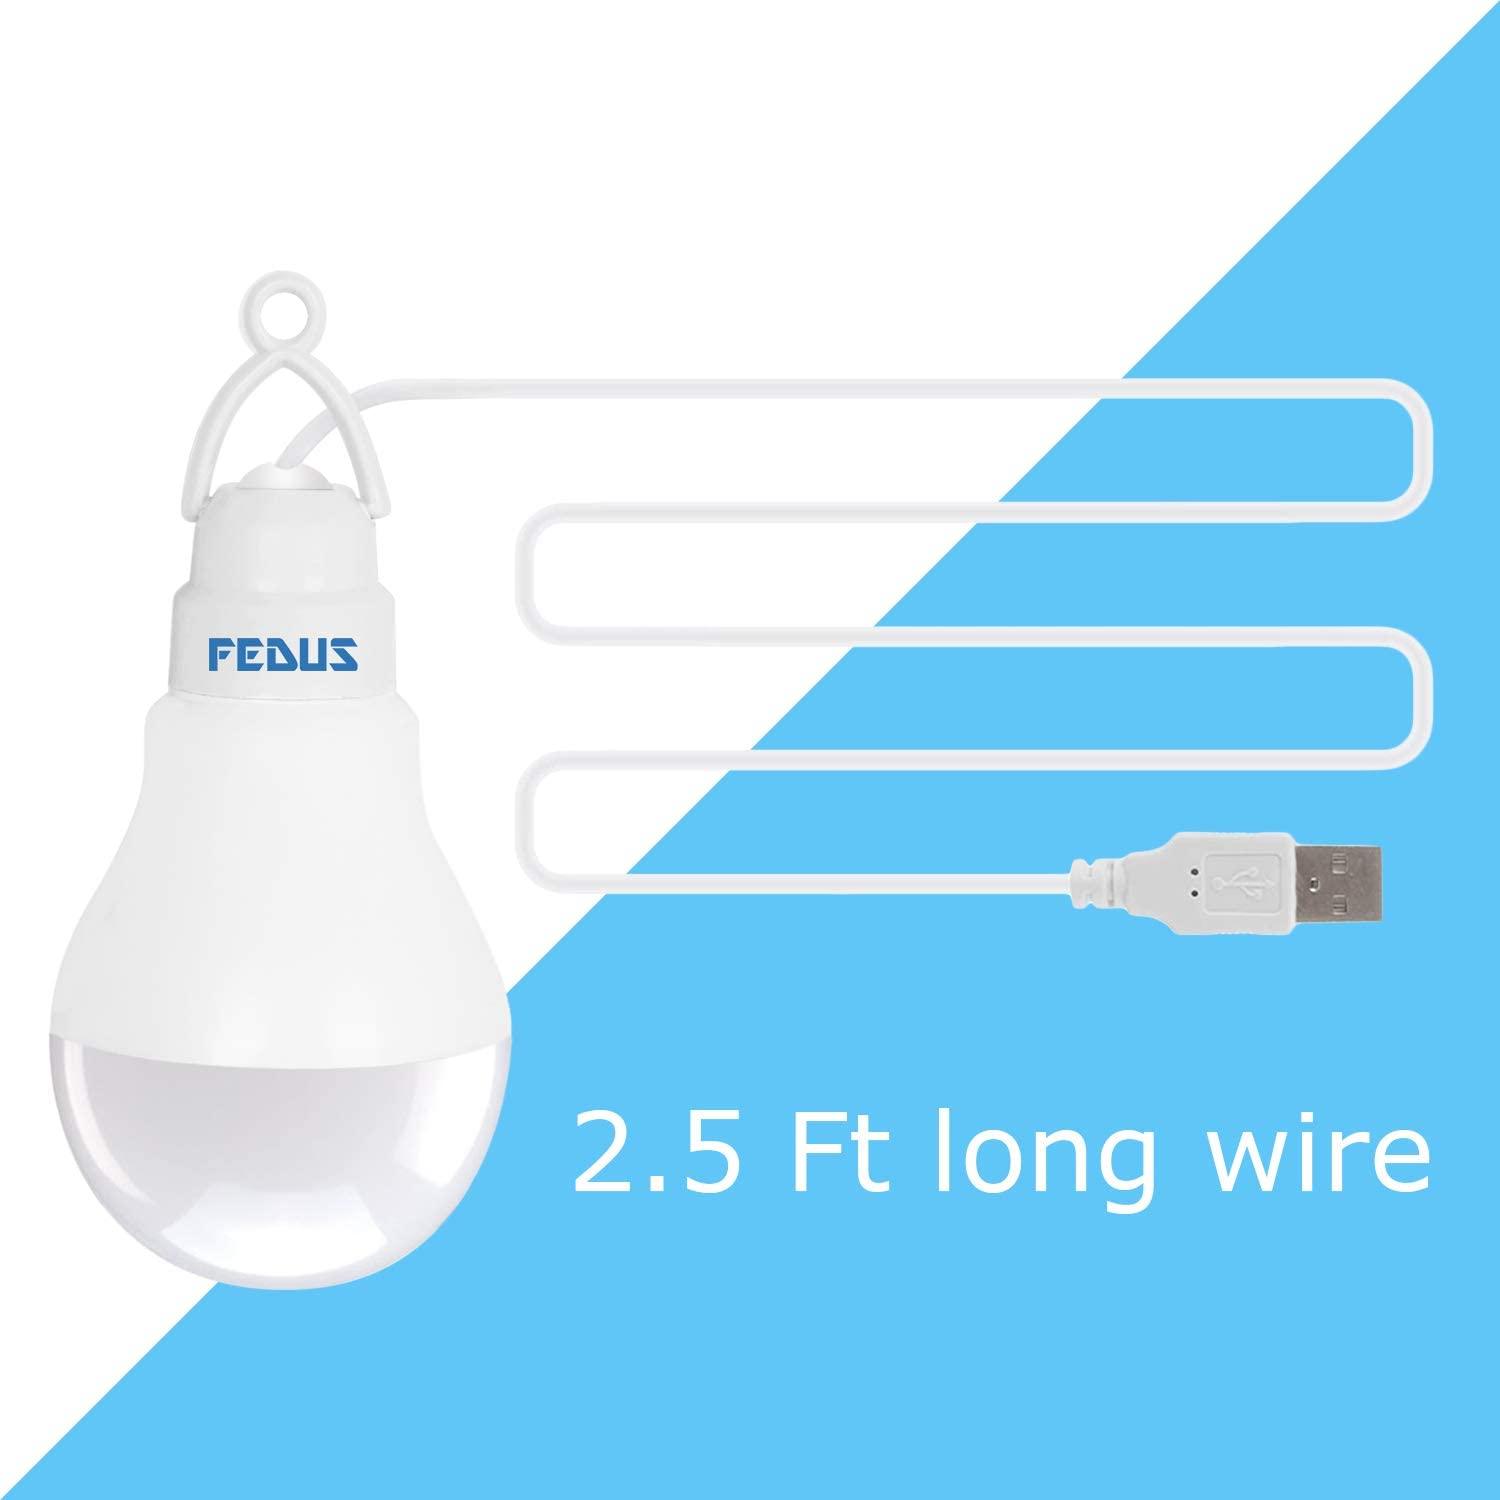 FEDUS USB Bulb for Power Bank, USB led Light for Power Bank, USB Light for Mobile Lamp/LED USB Bulb Mini LED Night Light led Portable Light - White - FEDUS